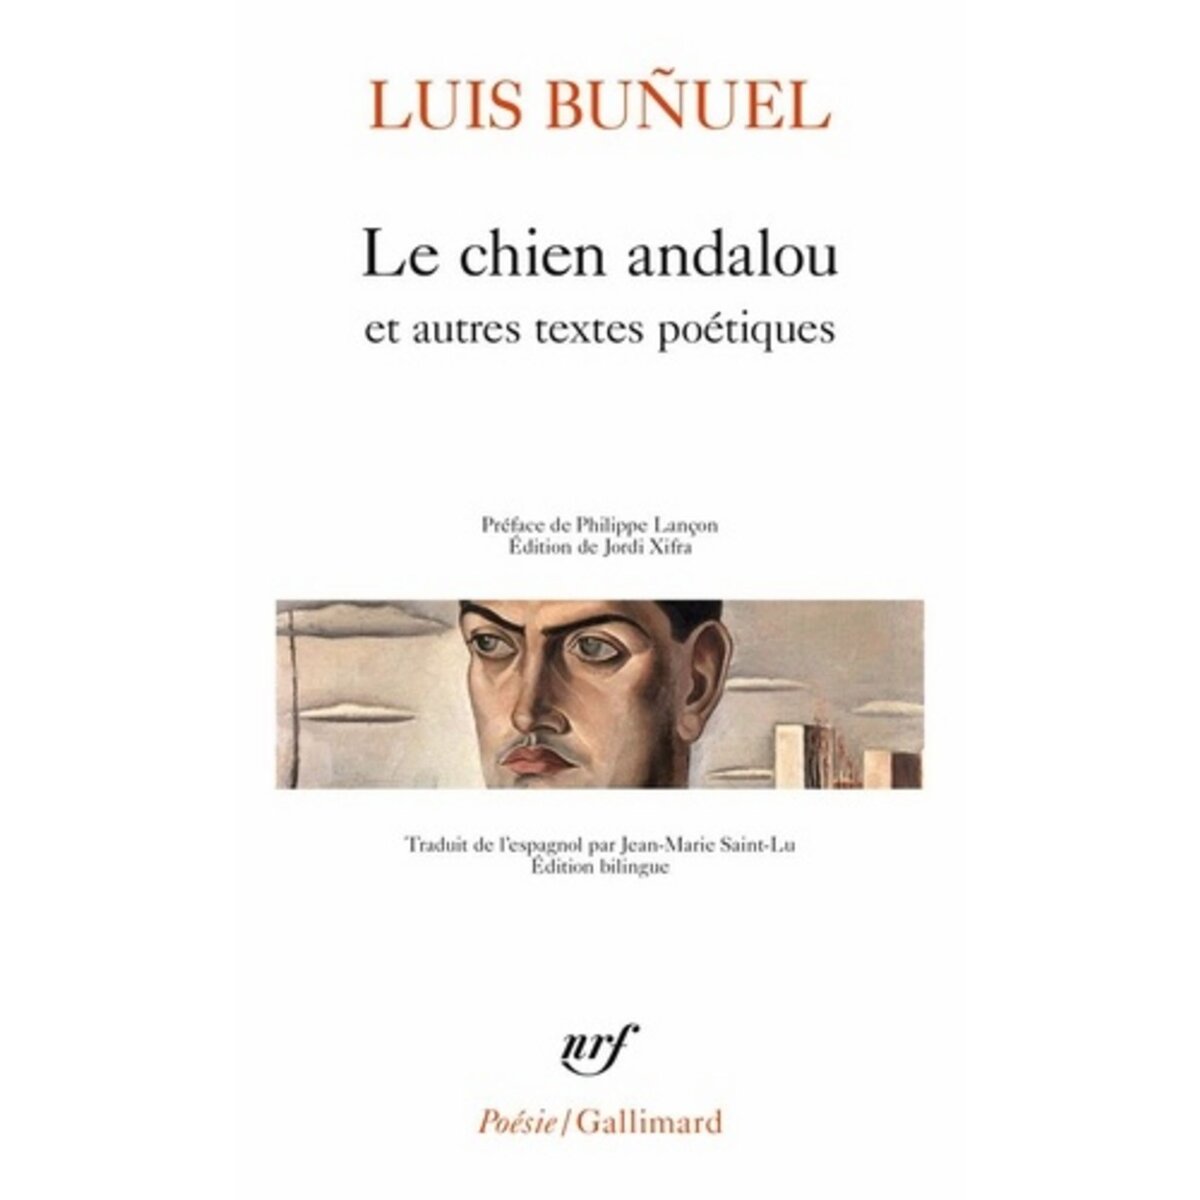  LE CHIEN ANDALOU ET AUTRES TEXTES POETIQUES. EDITION BILINGUE FRANCAIS-ESPAGNOL, Buñuel Luis